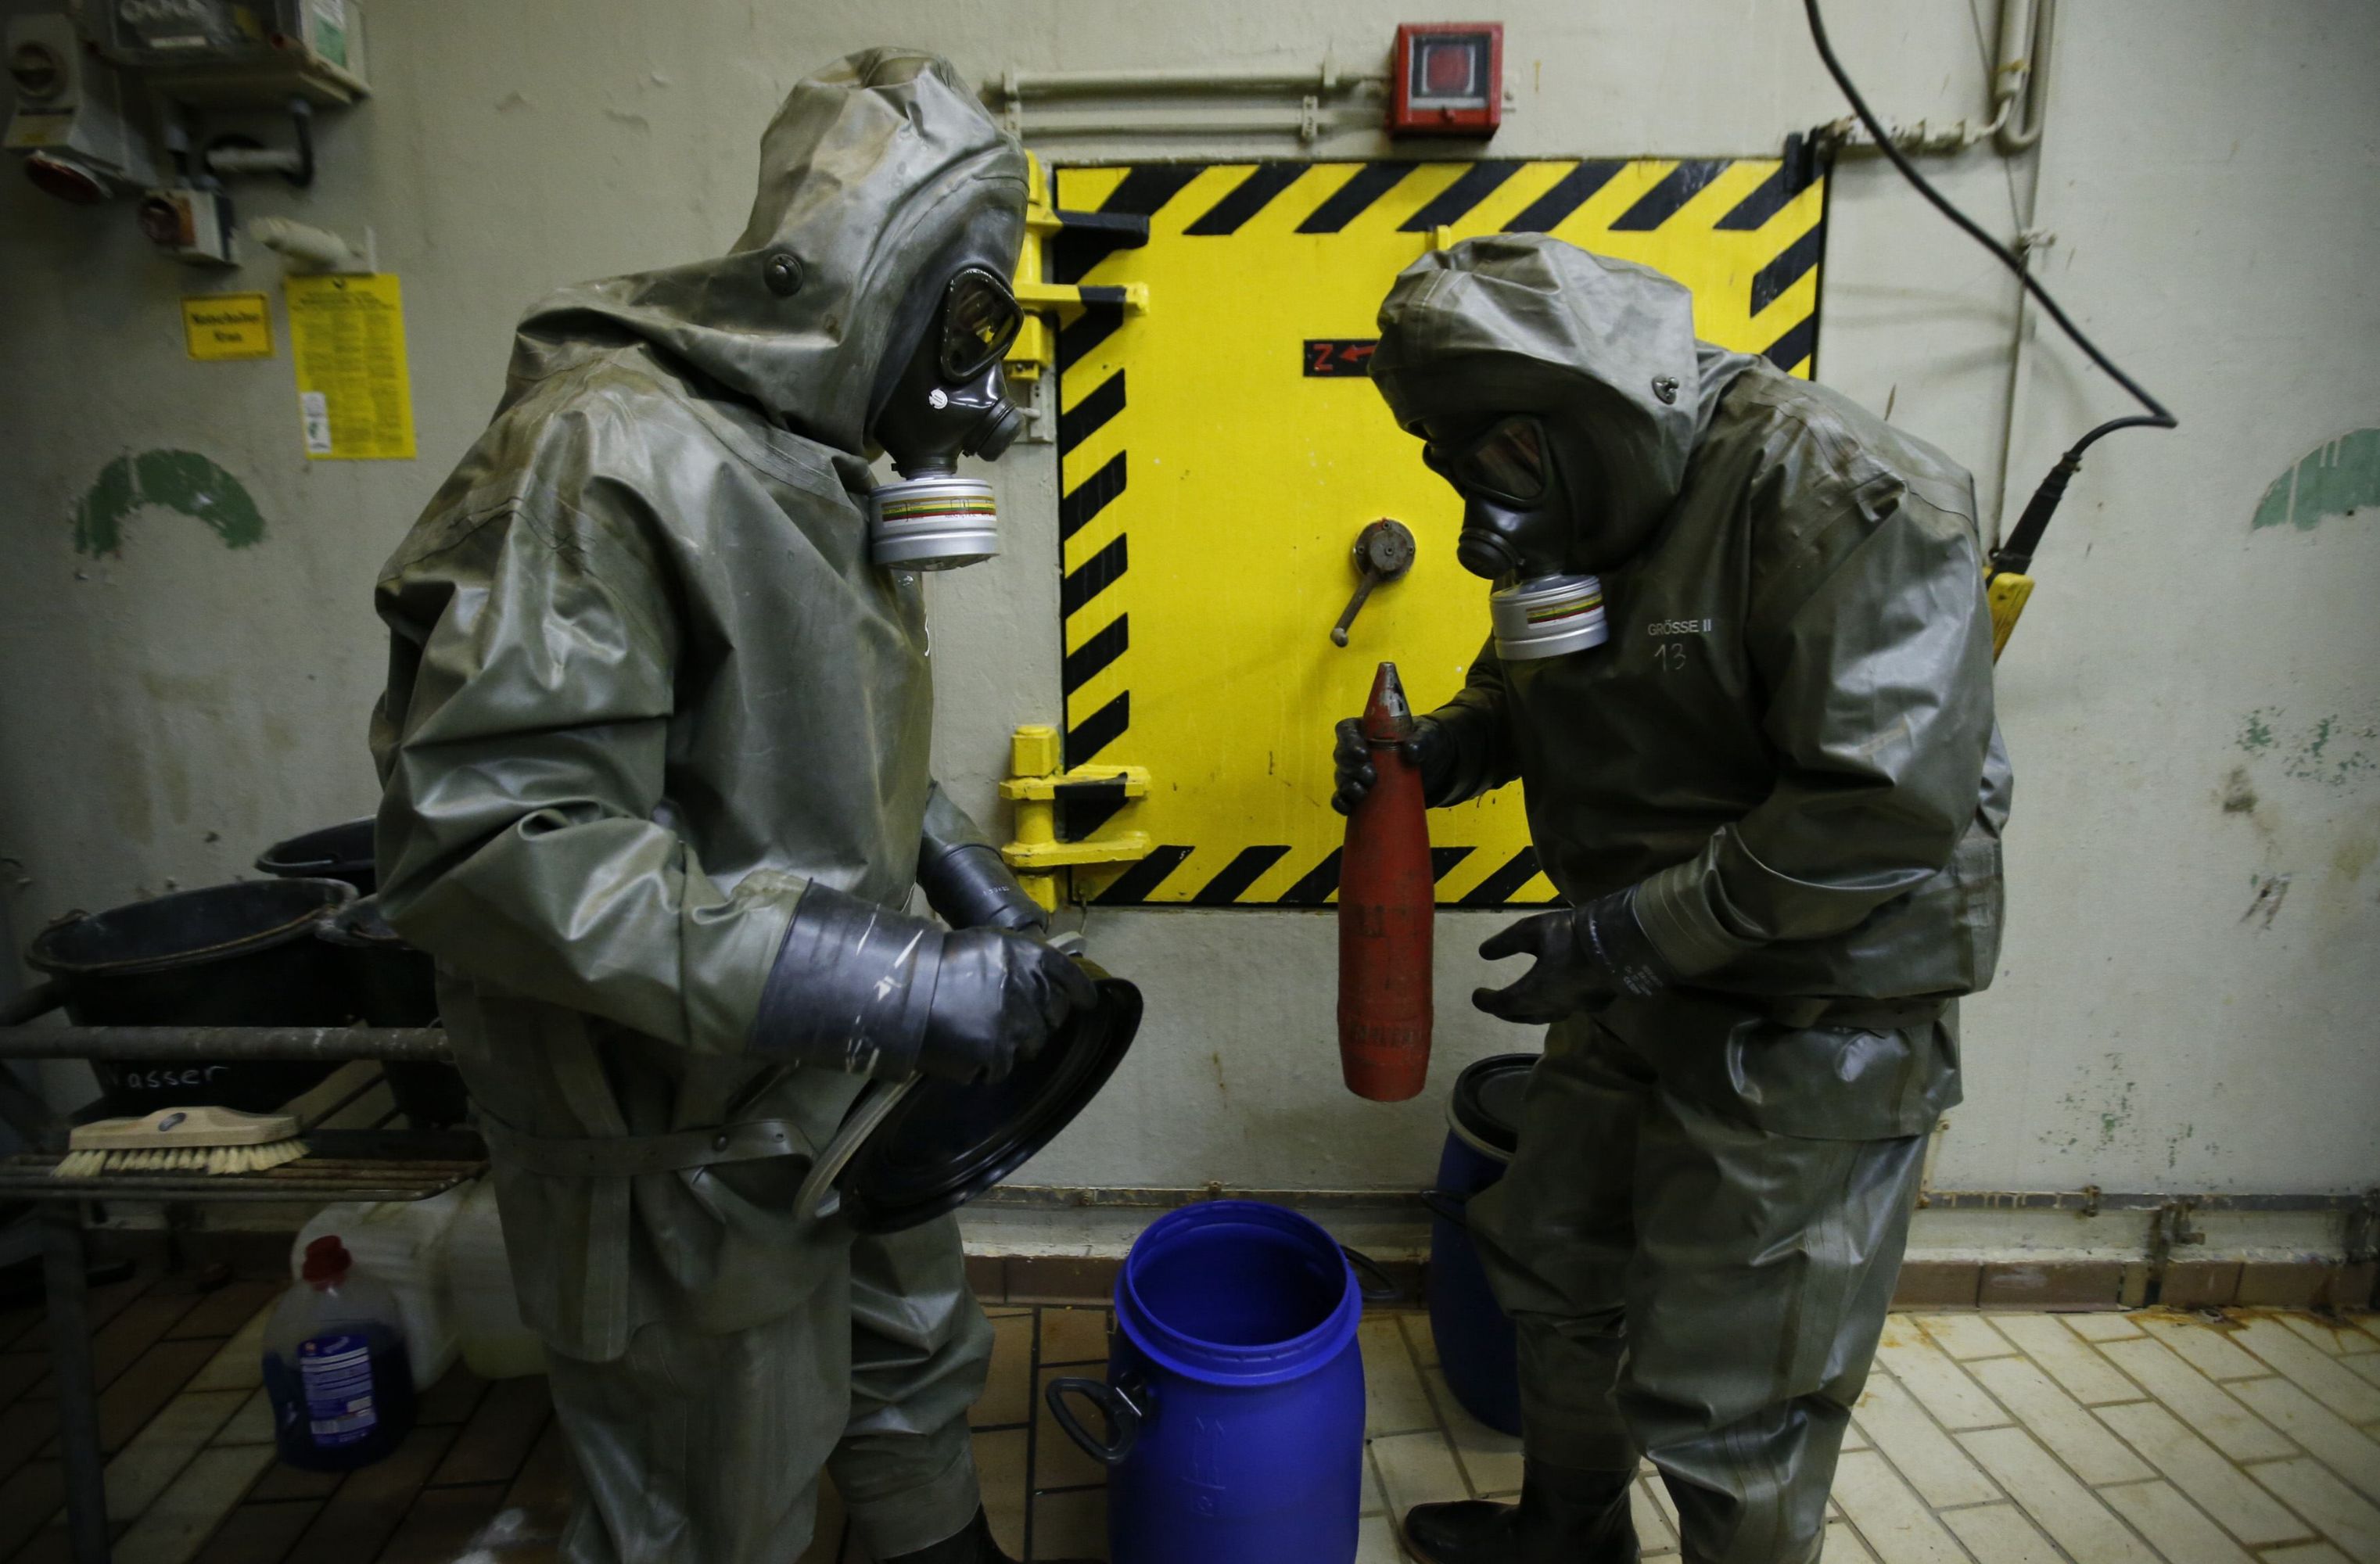 الأمم المتحدة تحذر من احتمال تنفيذ هجمات كيميائية في أوروبا